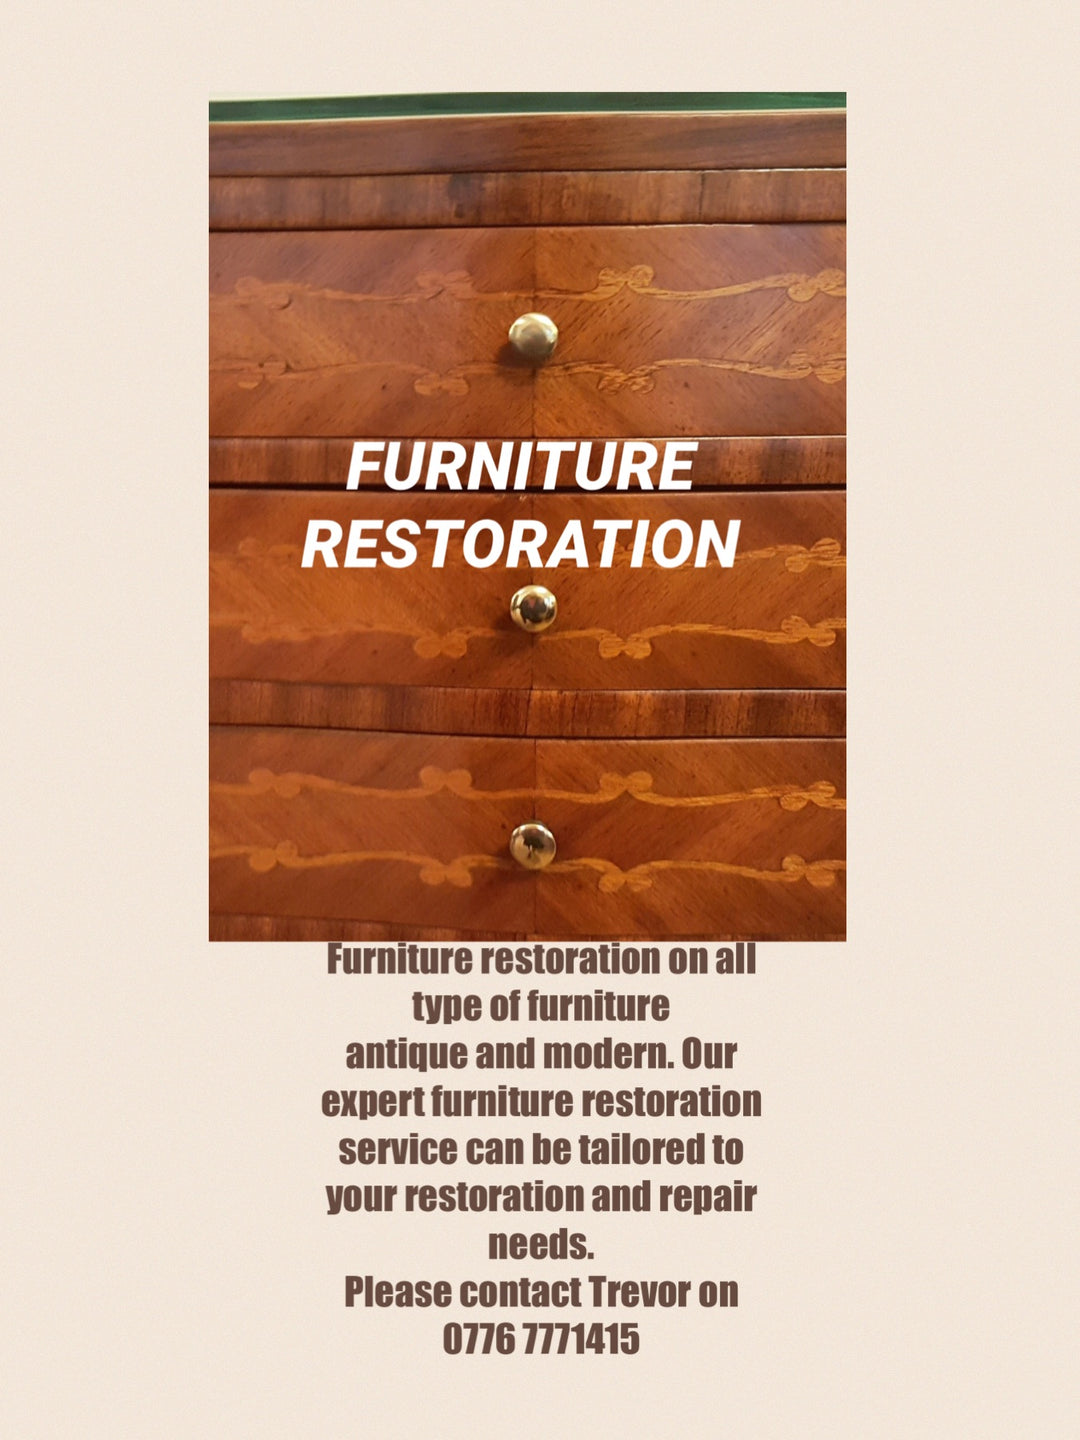 Repair, repolishing, restoration and reupholstering